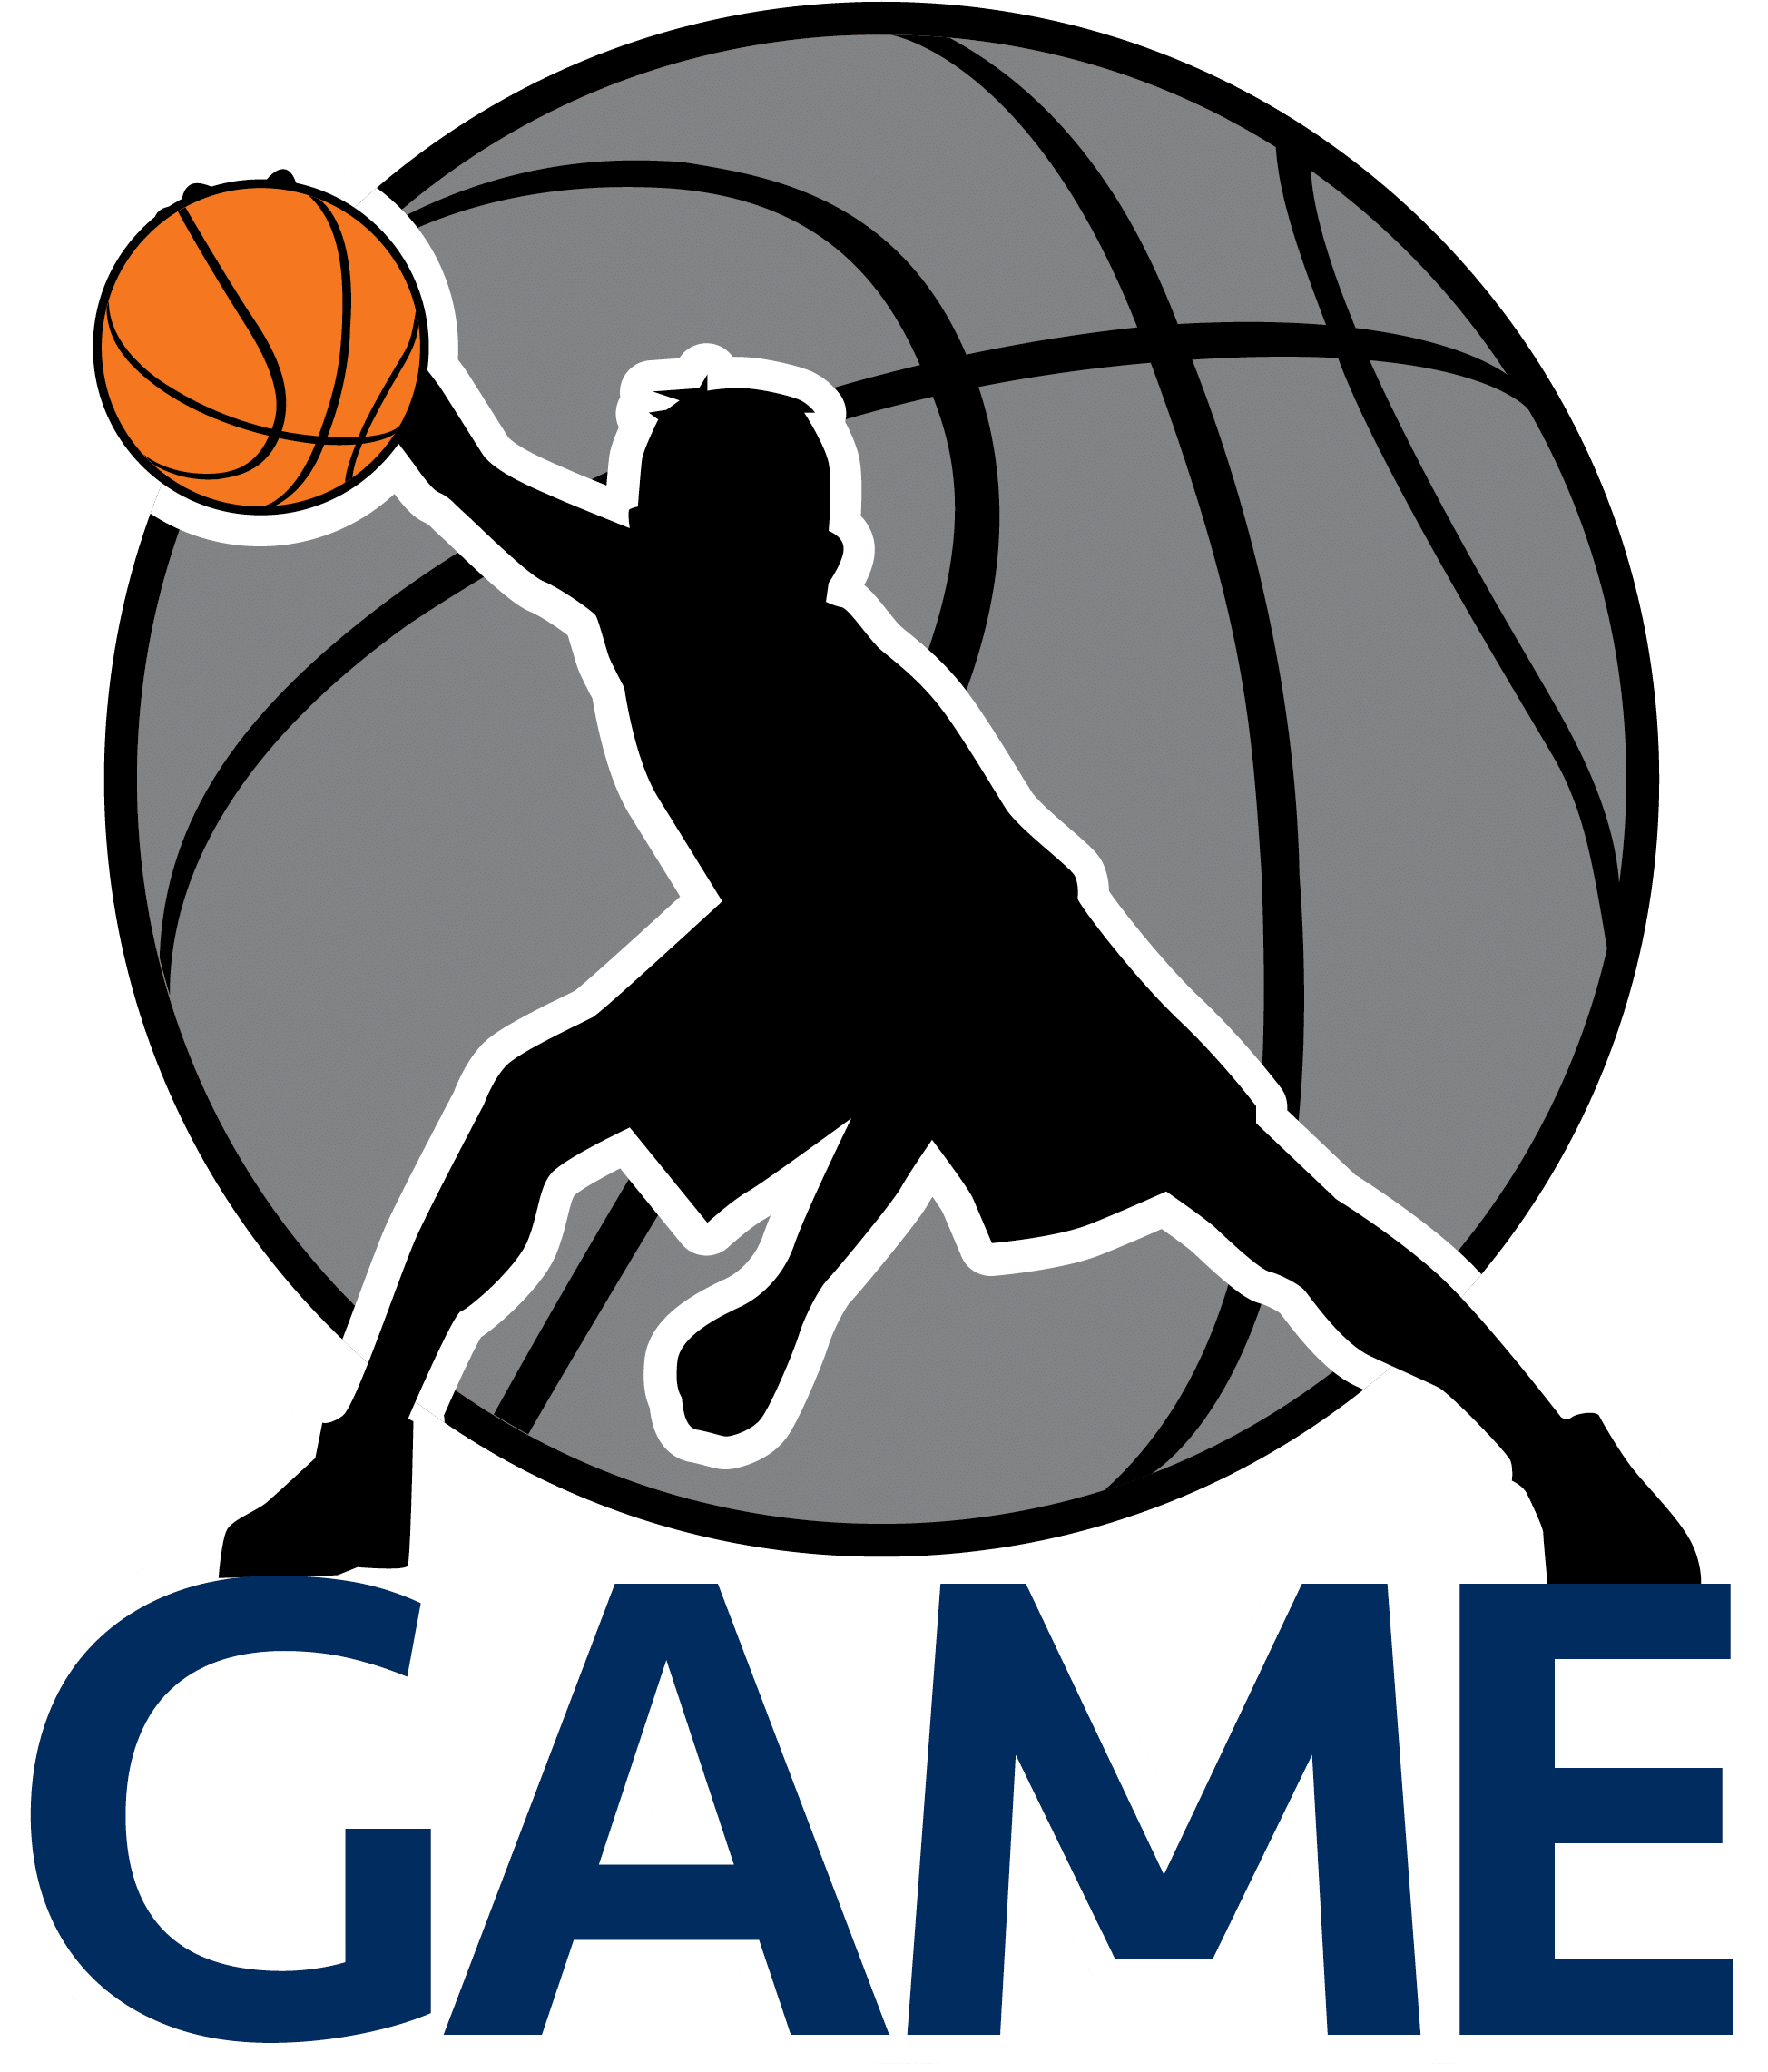 فريق كرة السلة logo PNG صورة عالية الجودة